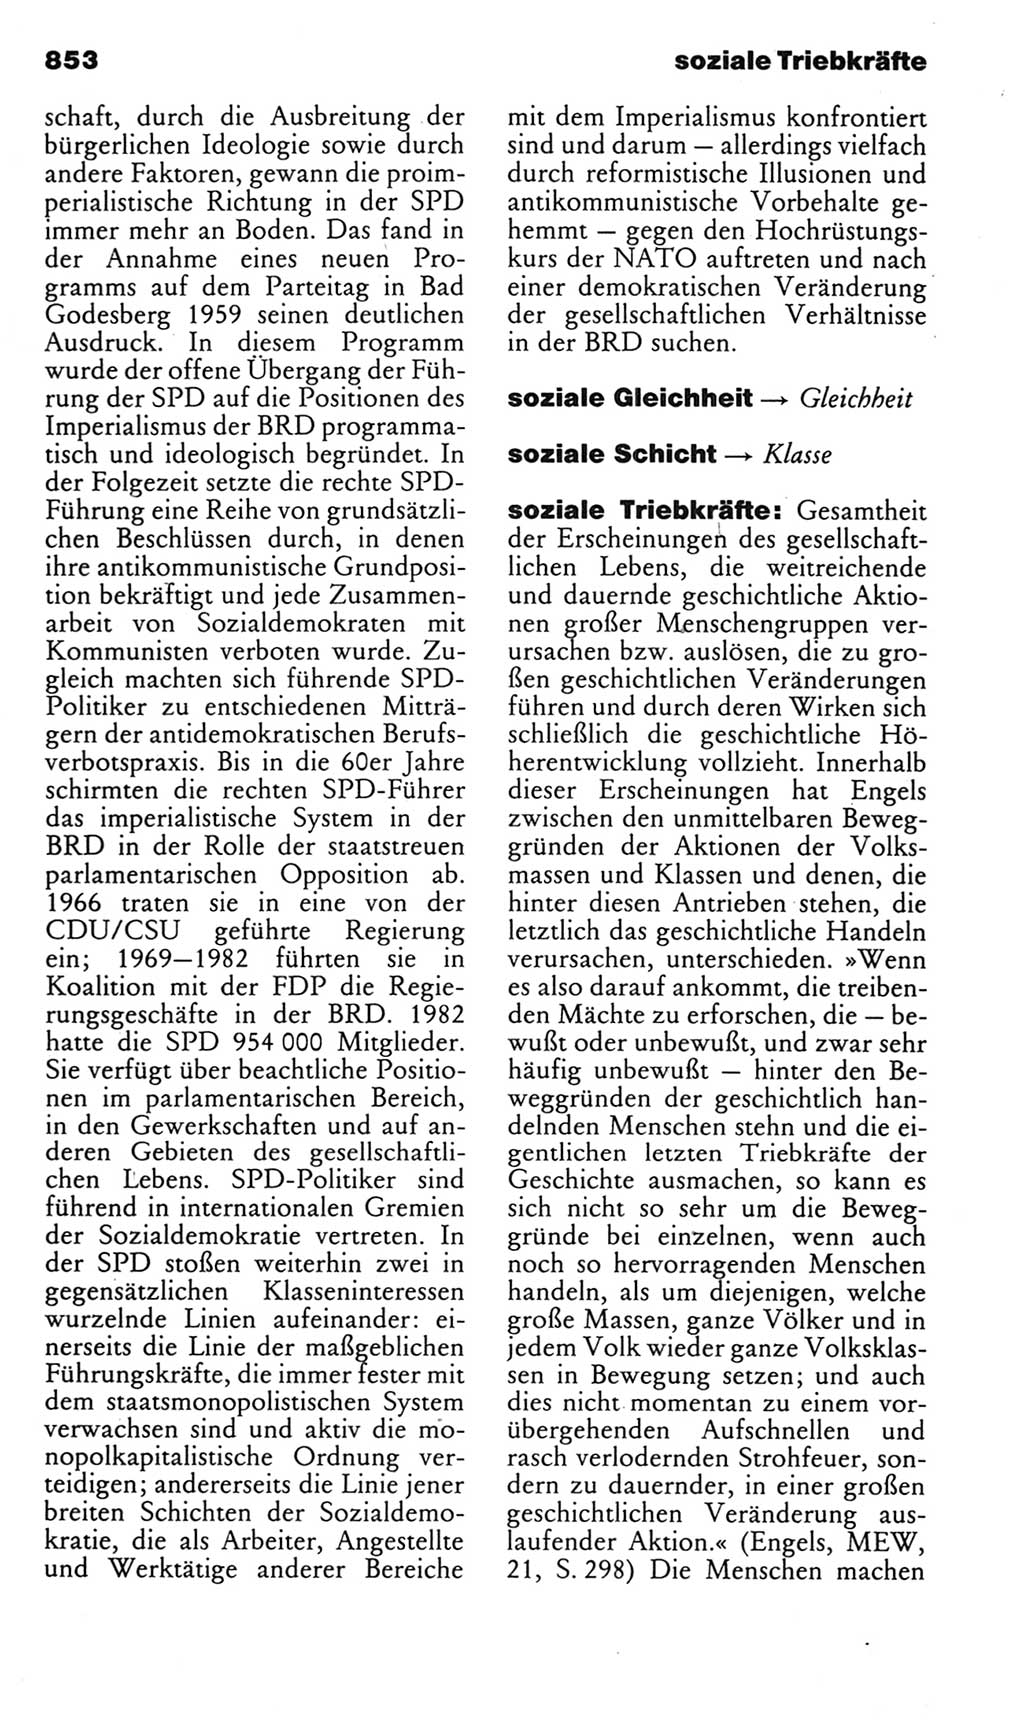 Kleines politisches Wörterbuch [Deutsche Demokratische Republik (DDR)] 1985, Seite 853 (Kl. pol. Wb. DDR 1985, S. 853)